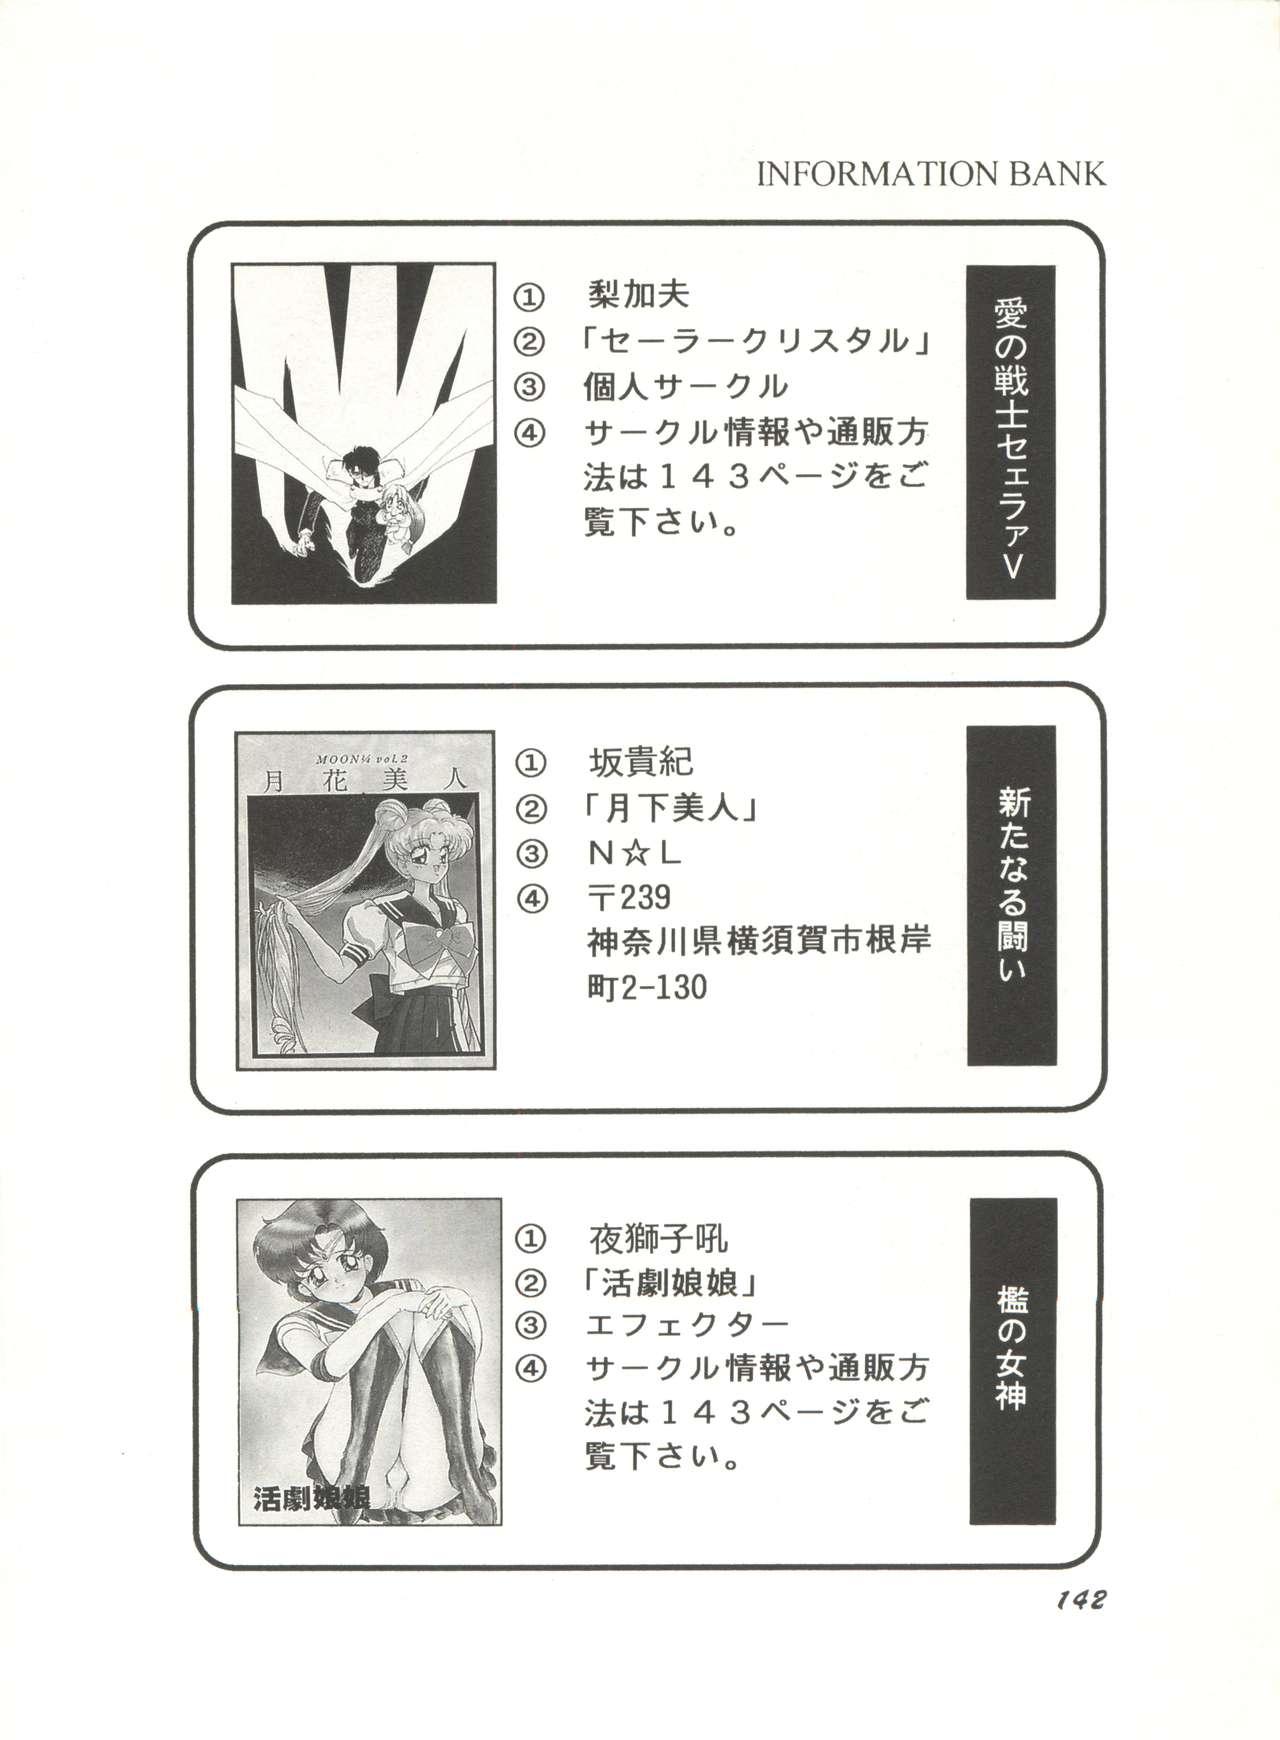 Bishoujo Doujinshi Anthology 3 - Moon Paradise 2 Tsuki no Rakuen 146